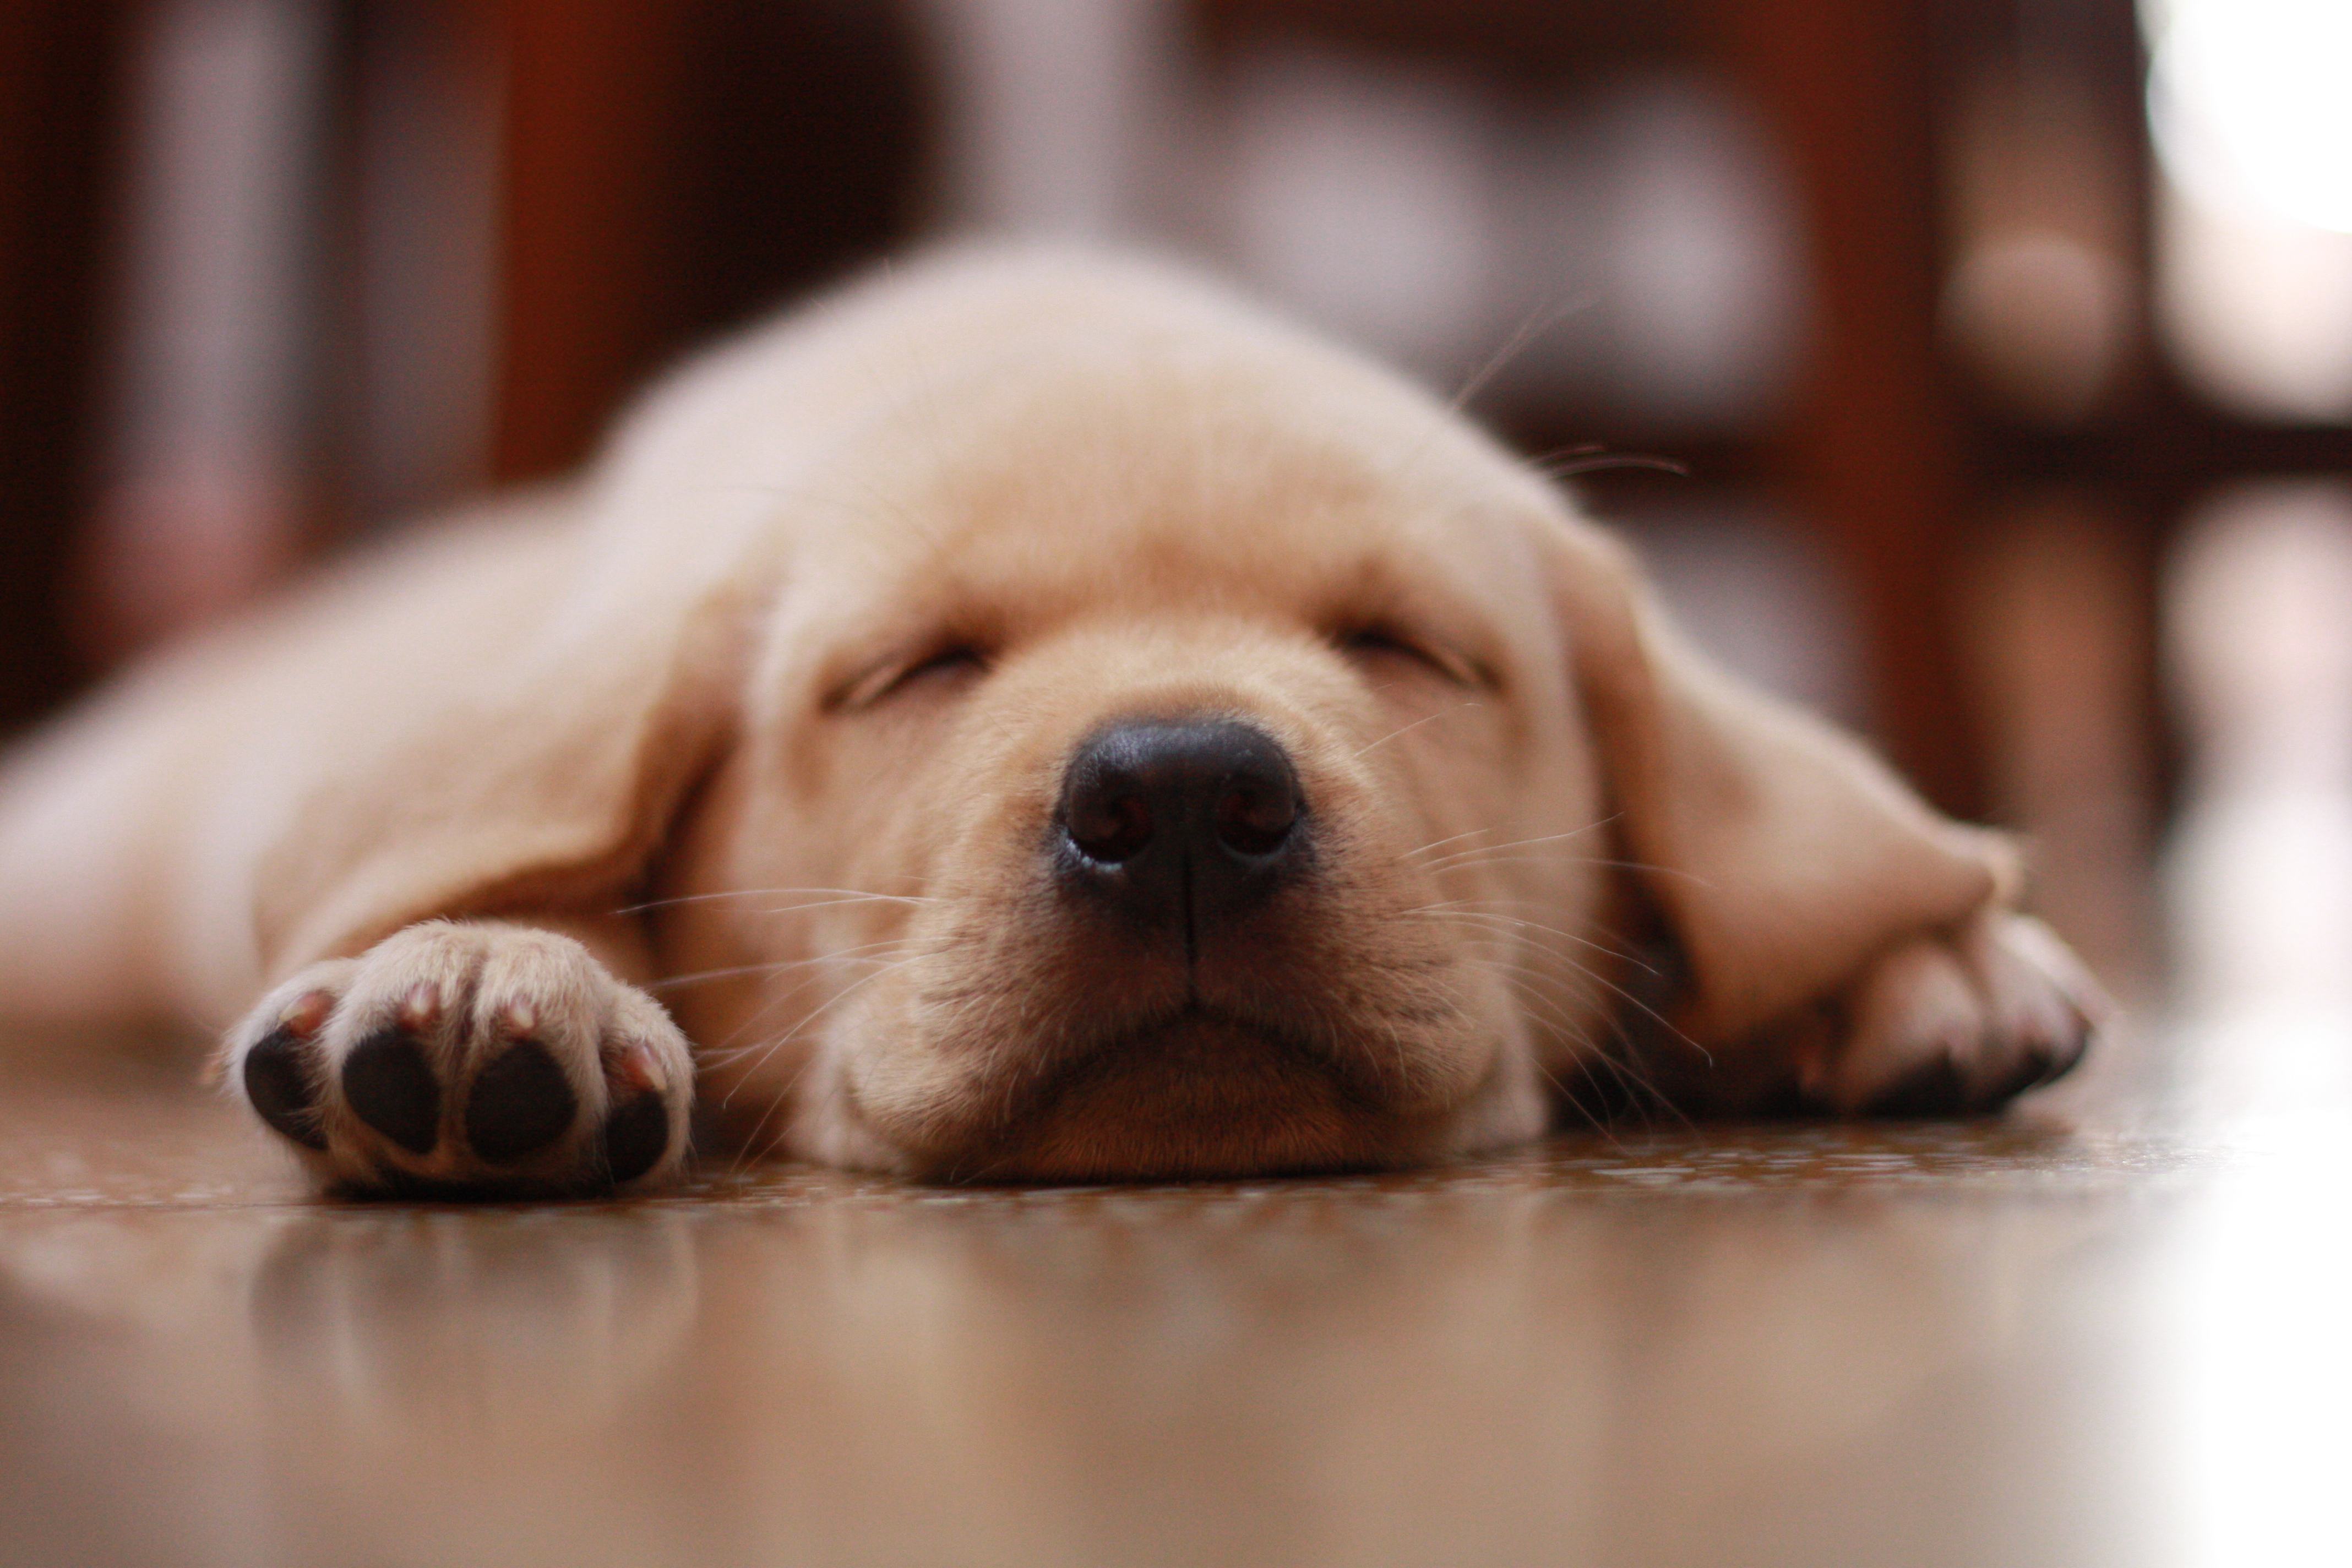 フリー画像 動物写真 哺乳類 イヌ科 犬 イヌ 子犬 寝顔 寝相 寝姿 ラブラドール レトリバー フリー素材 画像素材なら 無料 フリー写真素材のフリーフォト